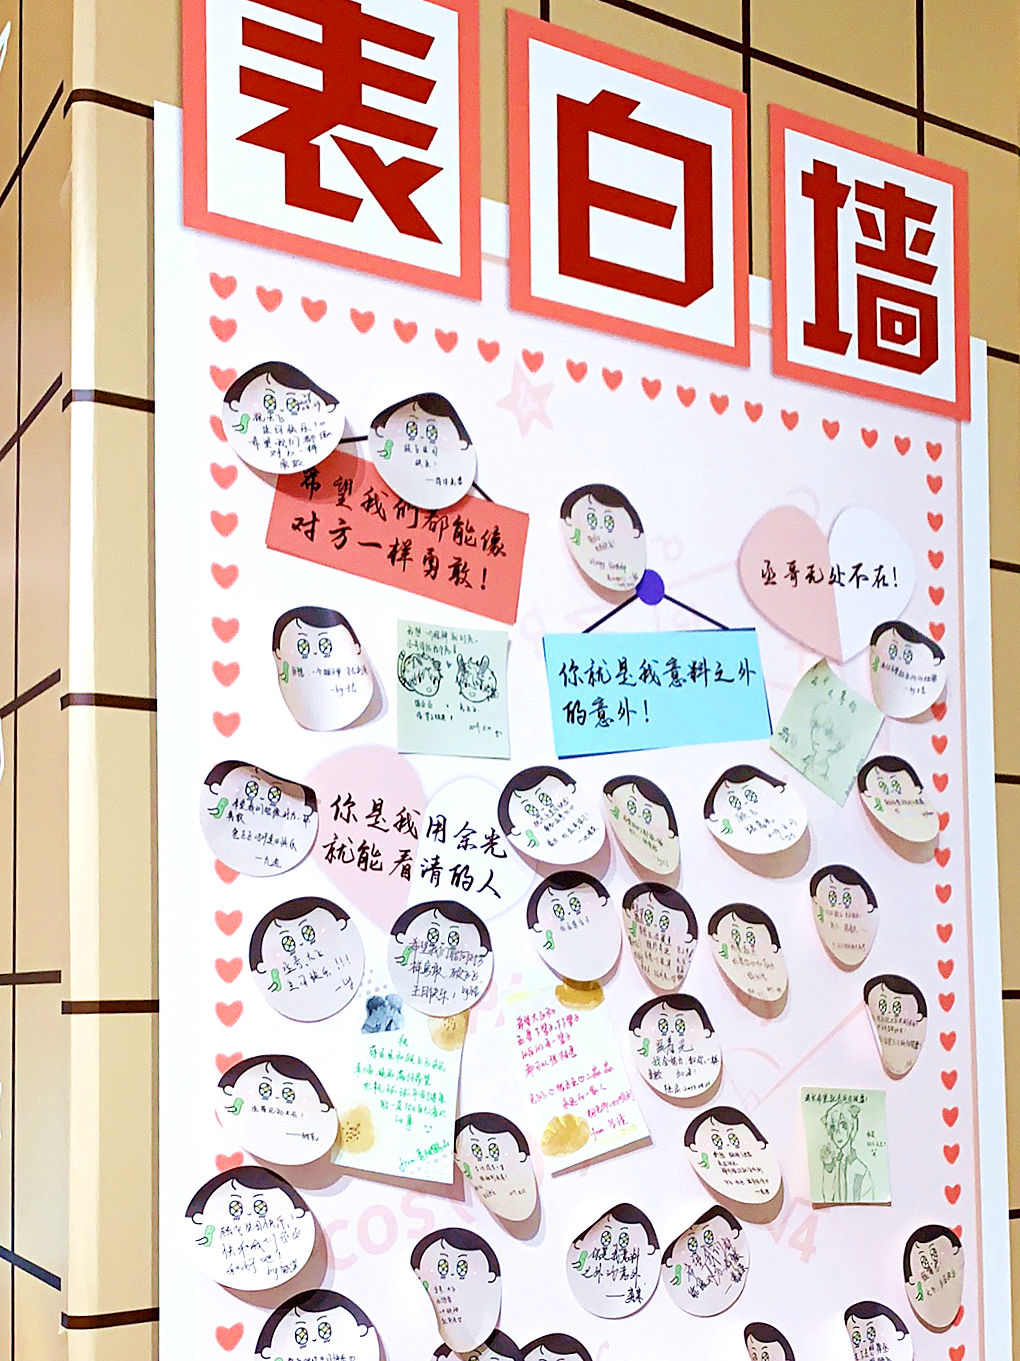 内江师范学院表白墙图片